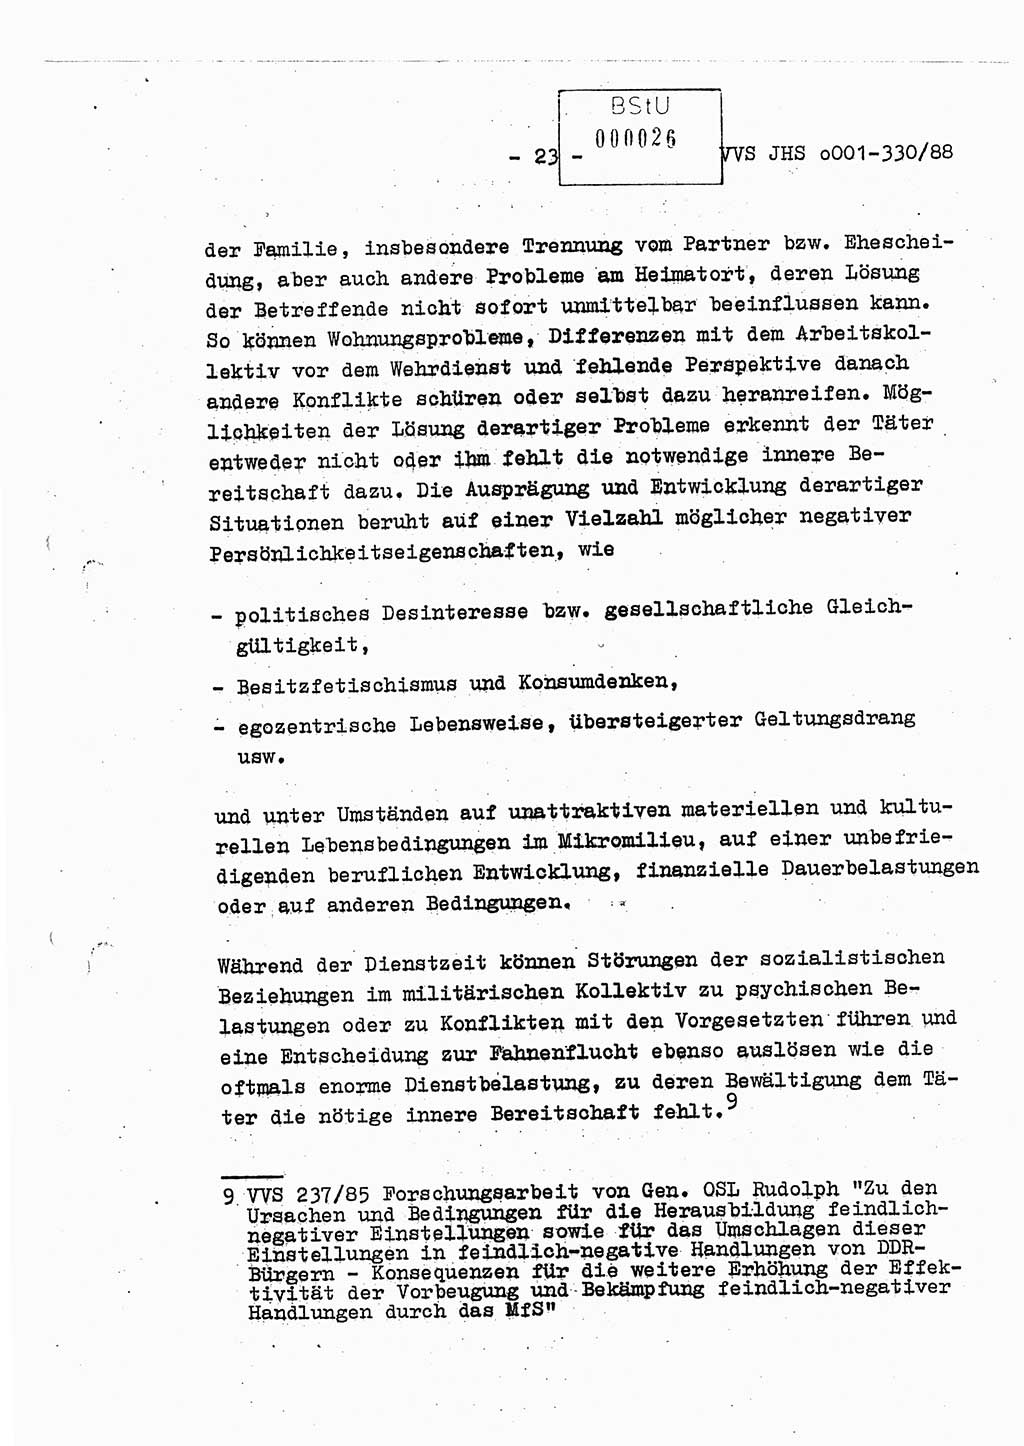 Diplomarbeit Offiziersschüler Thomas Mühle (HA Ⅸ/6), Ministerium für Staatssicherheit (MfS) [Deutsche Demokratische Republik (DDR)], Juristische Hochschule (JHS), Vertrauliche Verschlußsache (VVS) o001-330/88, Potsdam 1988, Seite 23 (Dipl.-Arb. MfS DDR JHS VVS o001-330/88 1988, S. 23)